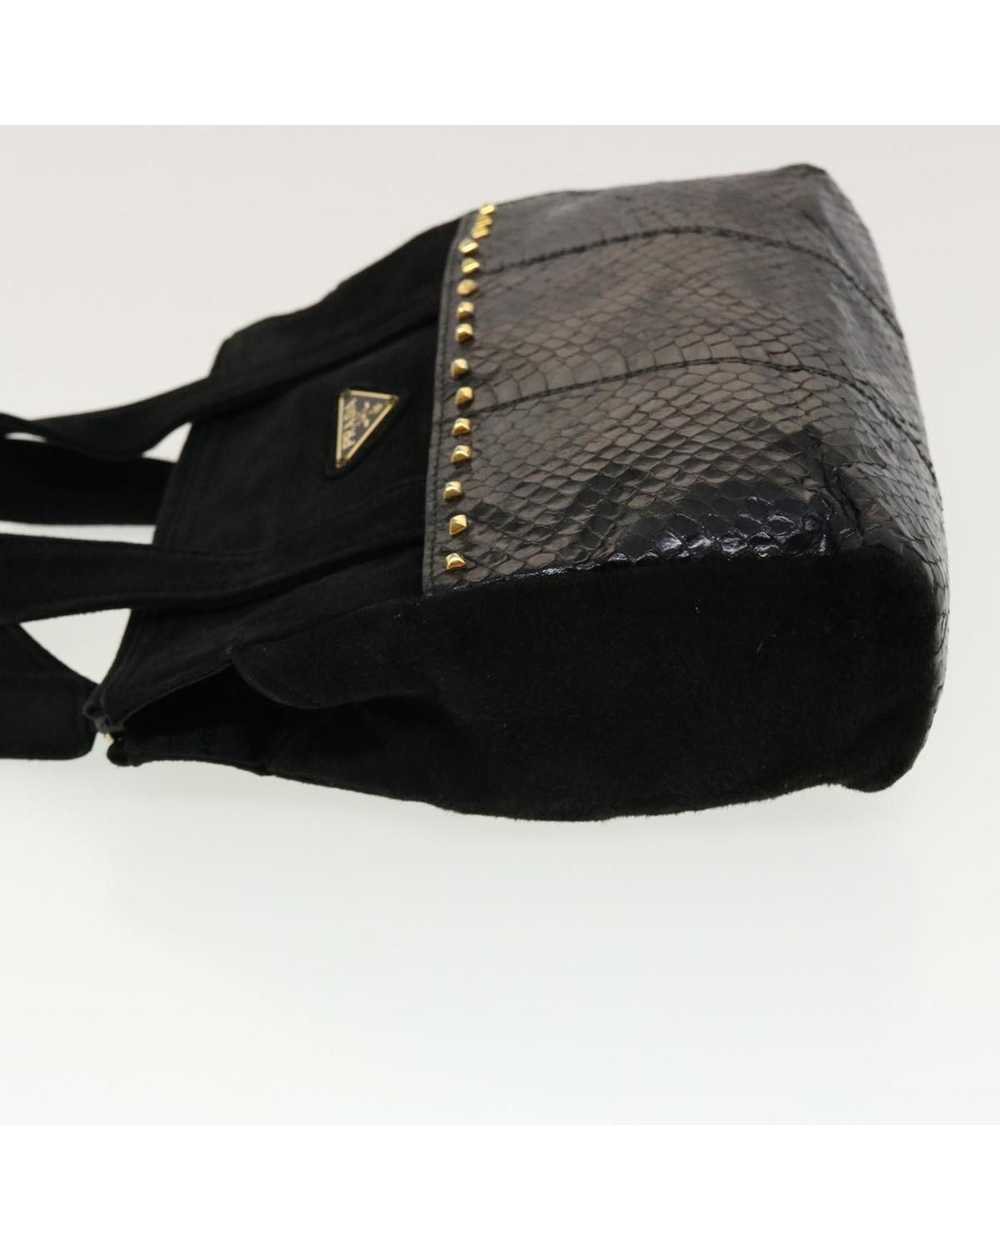 Prada Black Suede Hand Bag - image 4